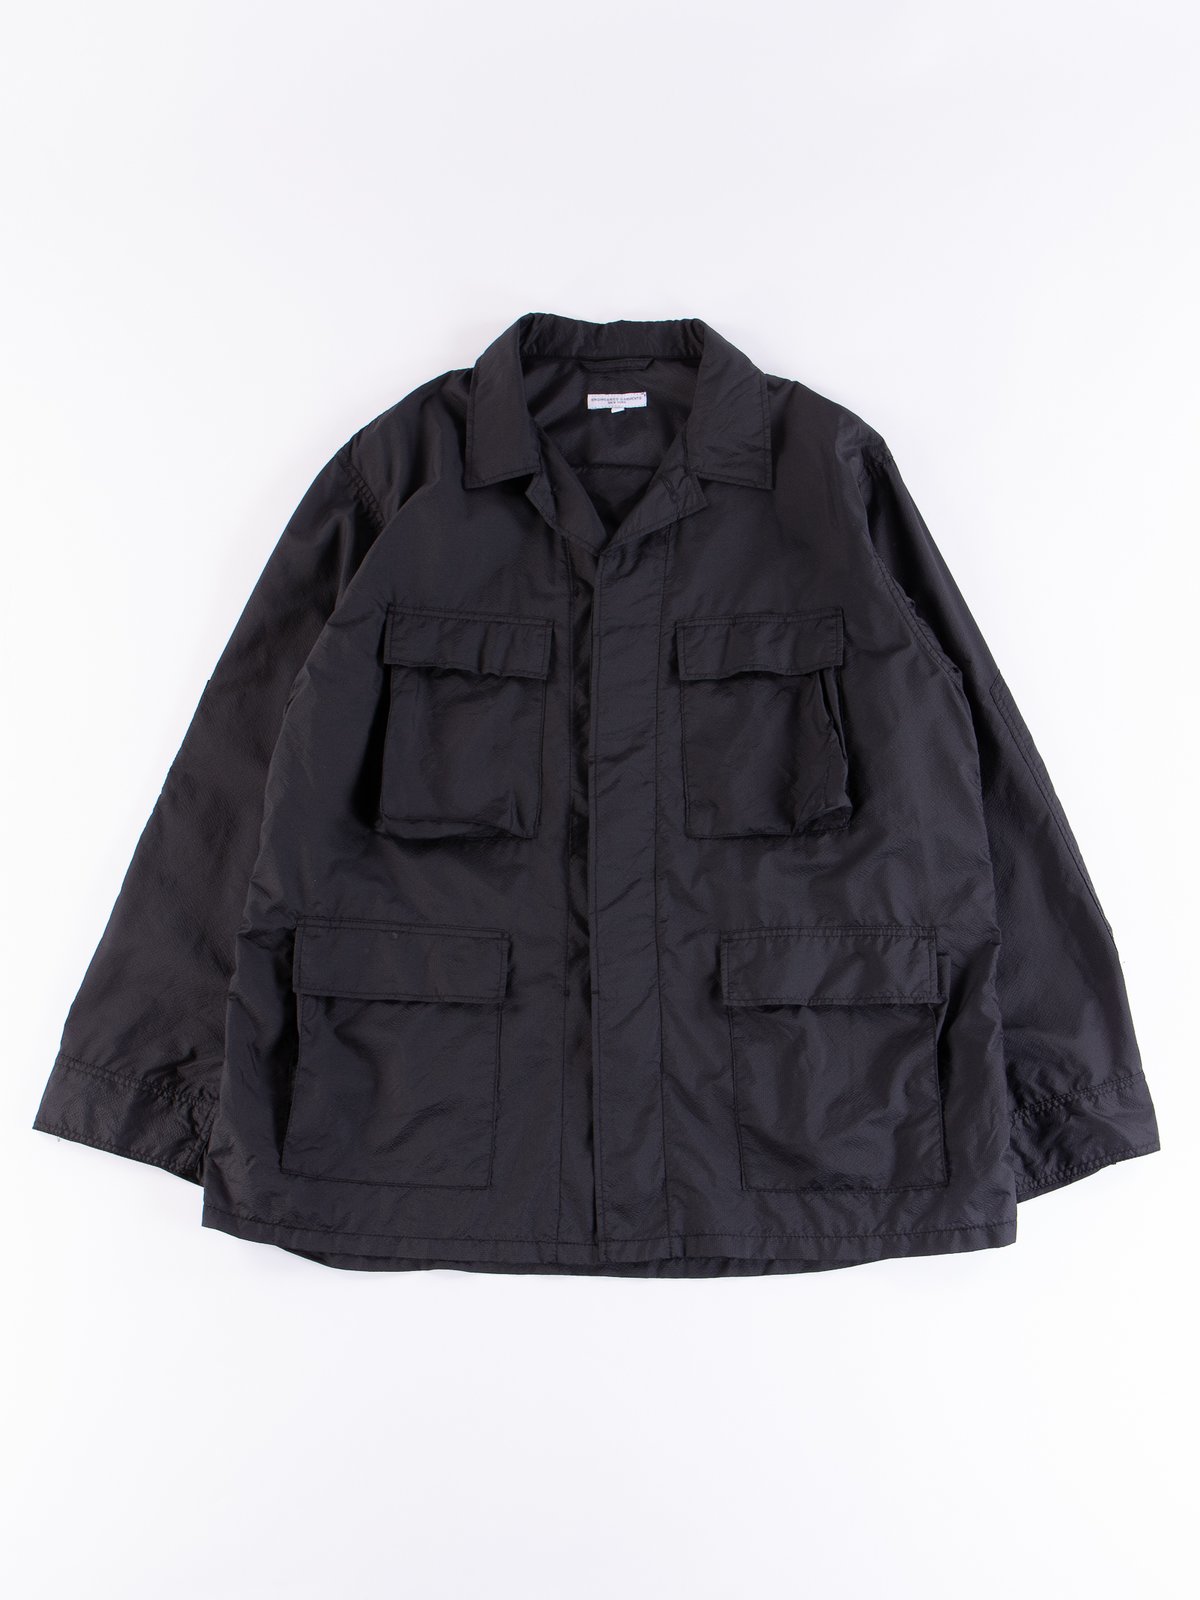 SUMARI Nylon 3B Jacket テーラードジャケット 1 S 黒